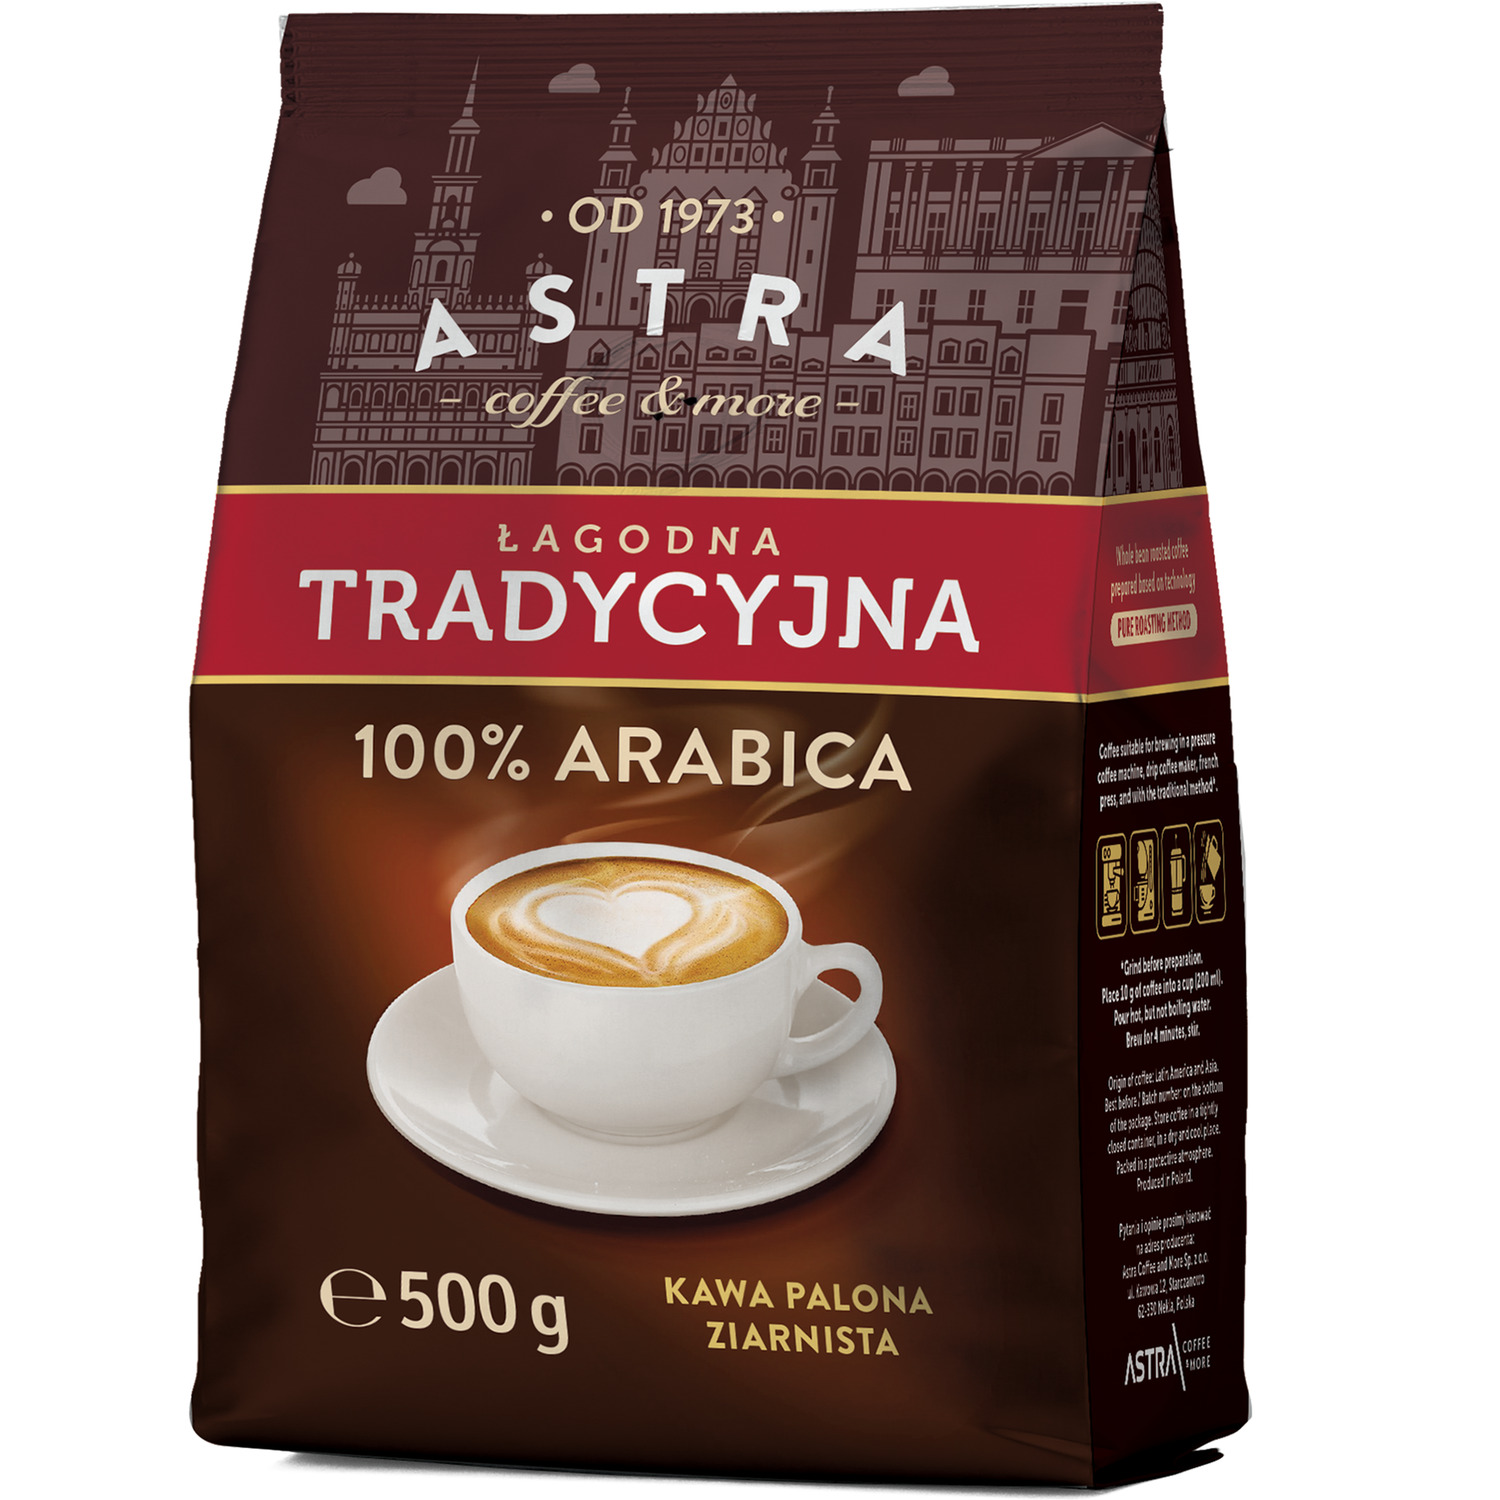 Kawa ASTRA ziarno 500g ŁagodnaTradycyjna 100% ARABICA, gk 0014219